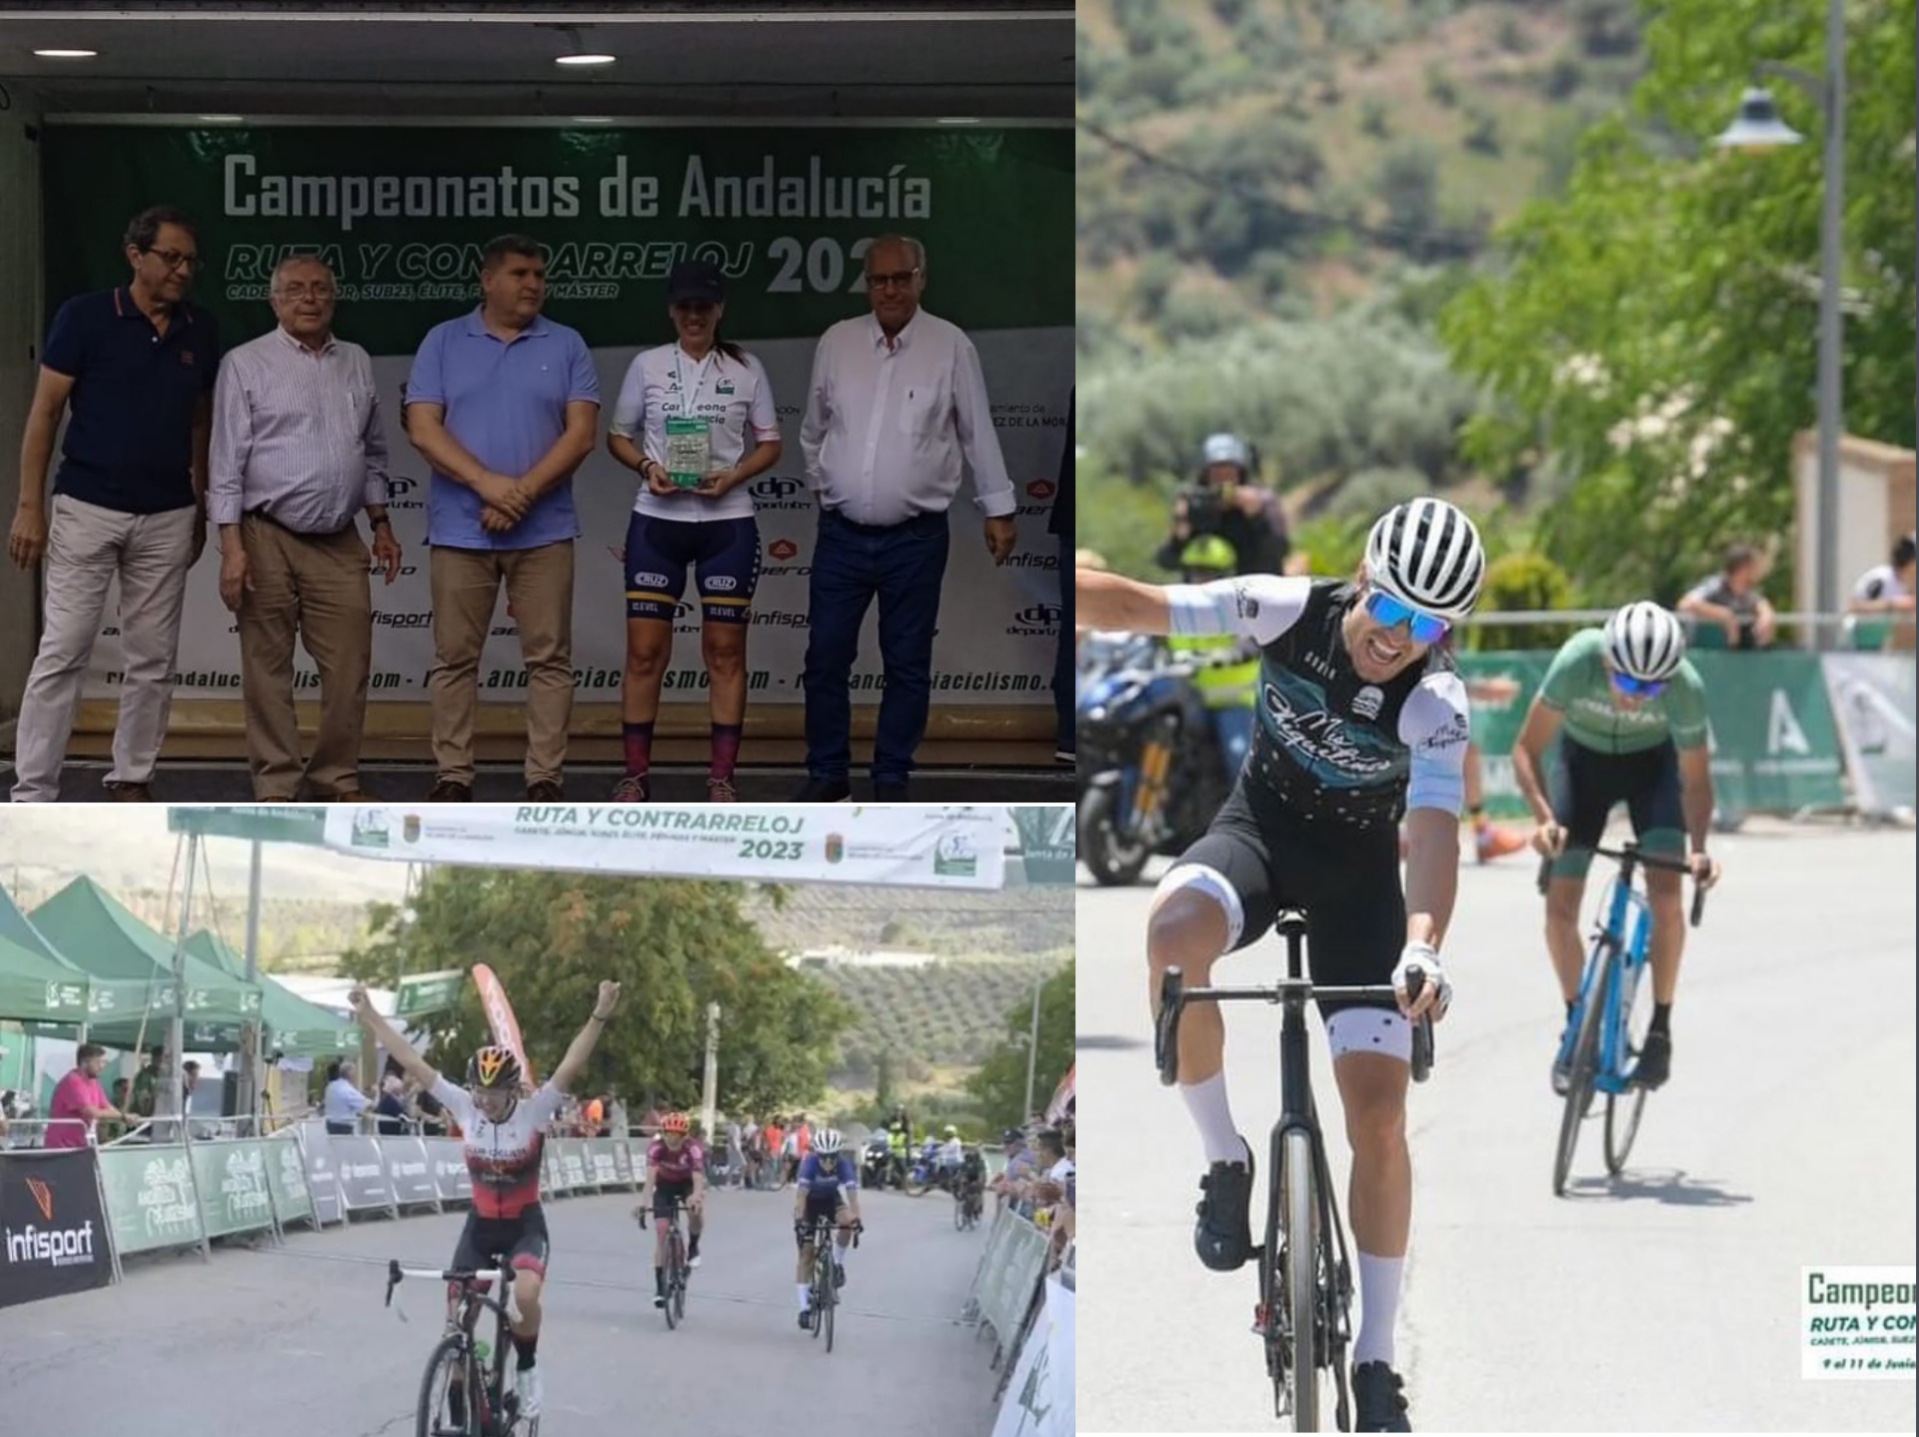 Ana María Mena, Isabel Peña, Inmaculada Medrán y Joaquín Torres son Campeones de Andalucía en ruta